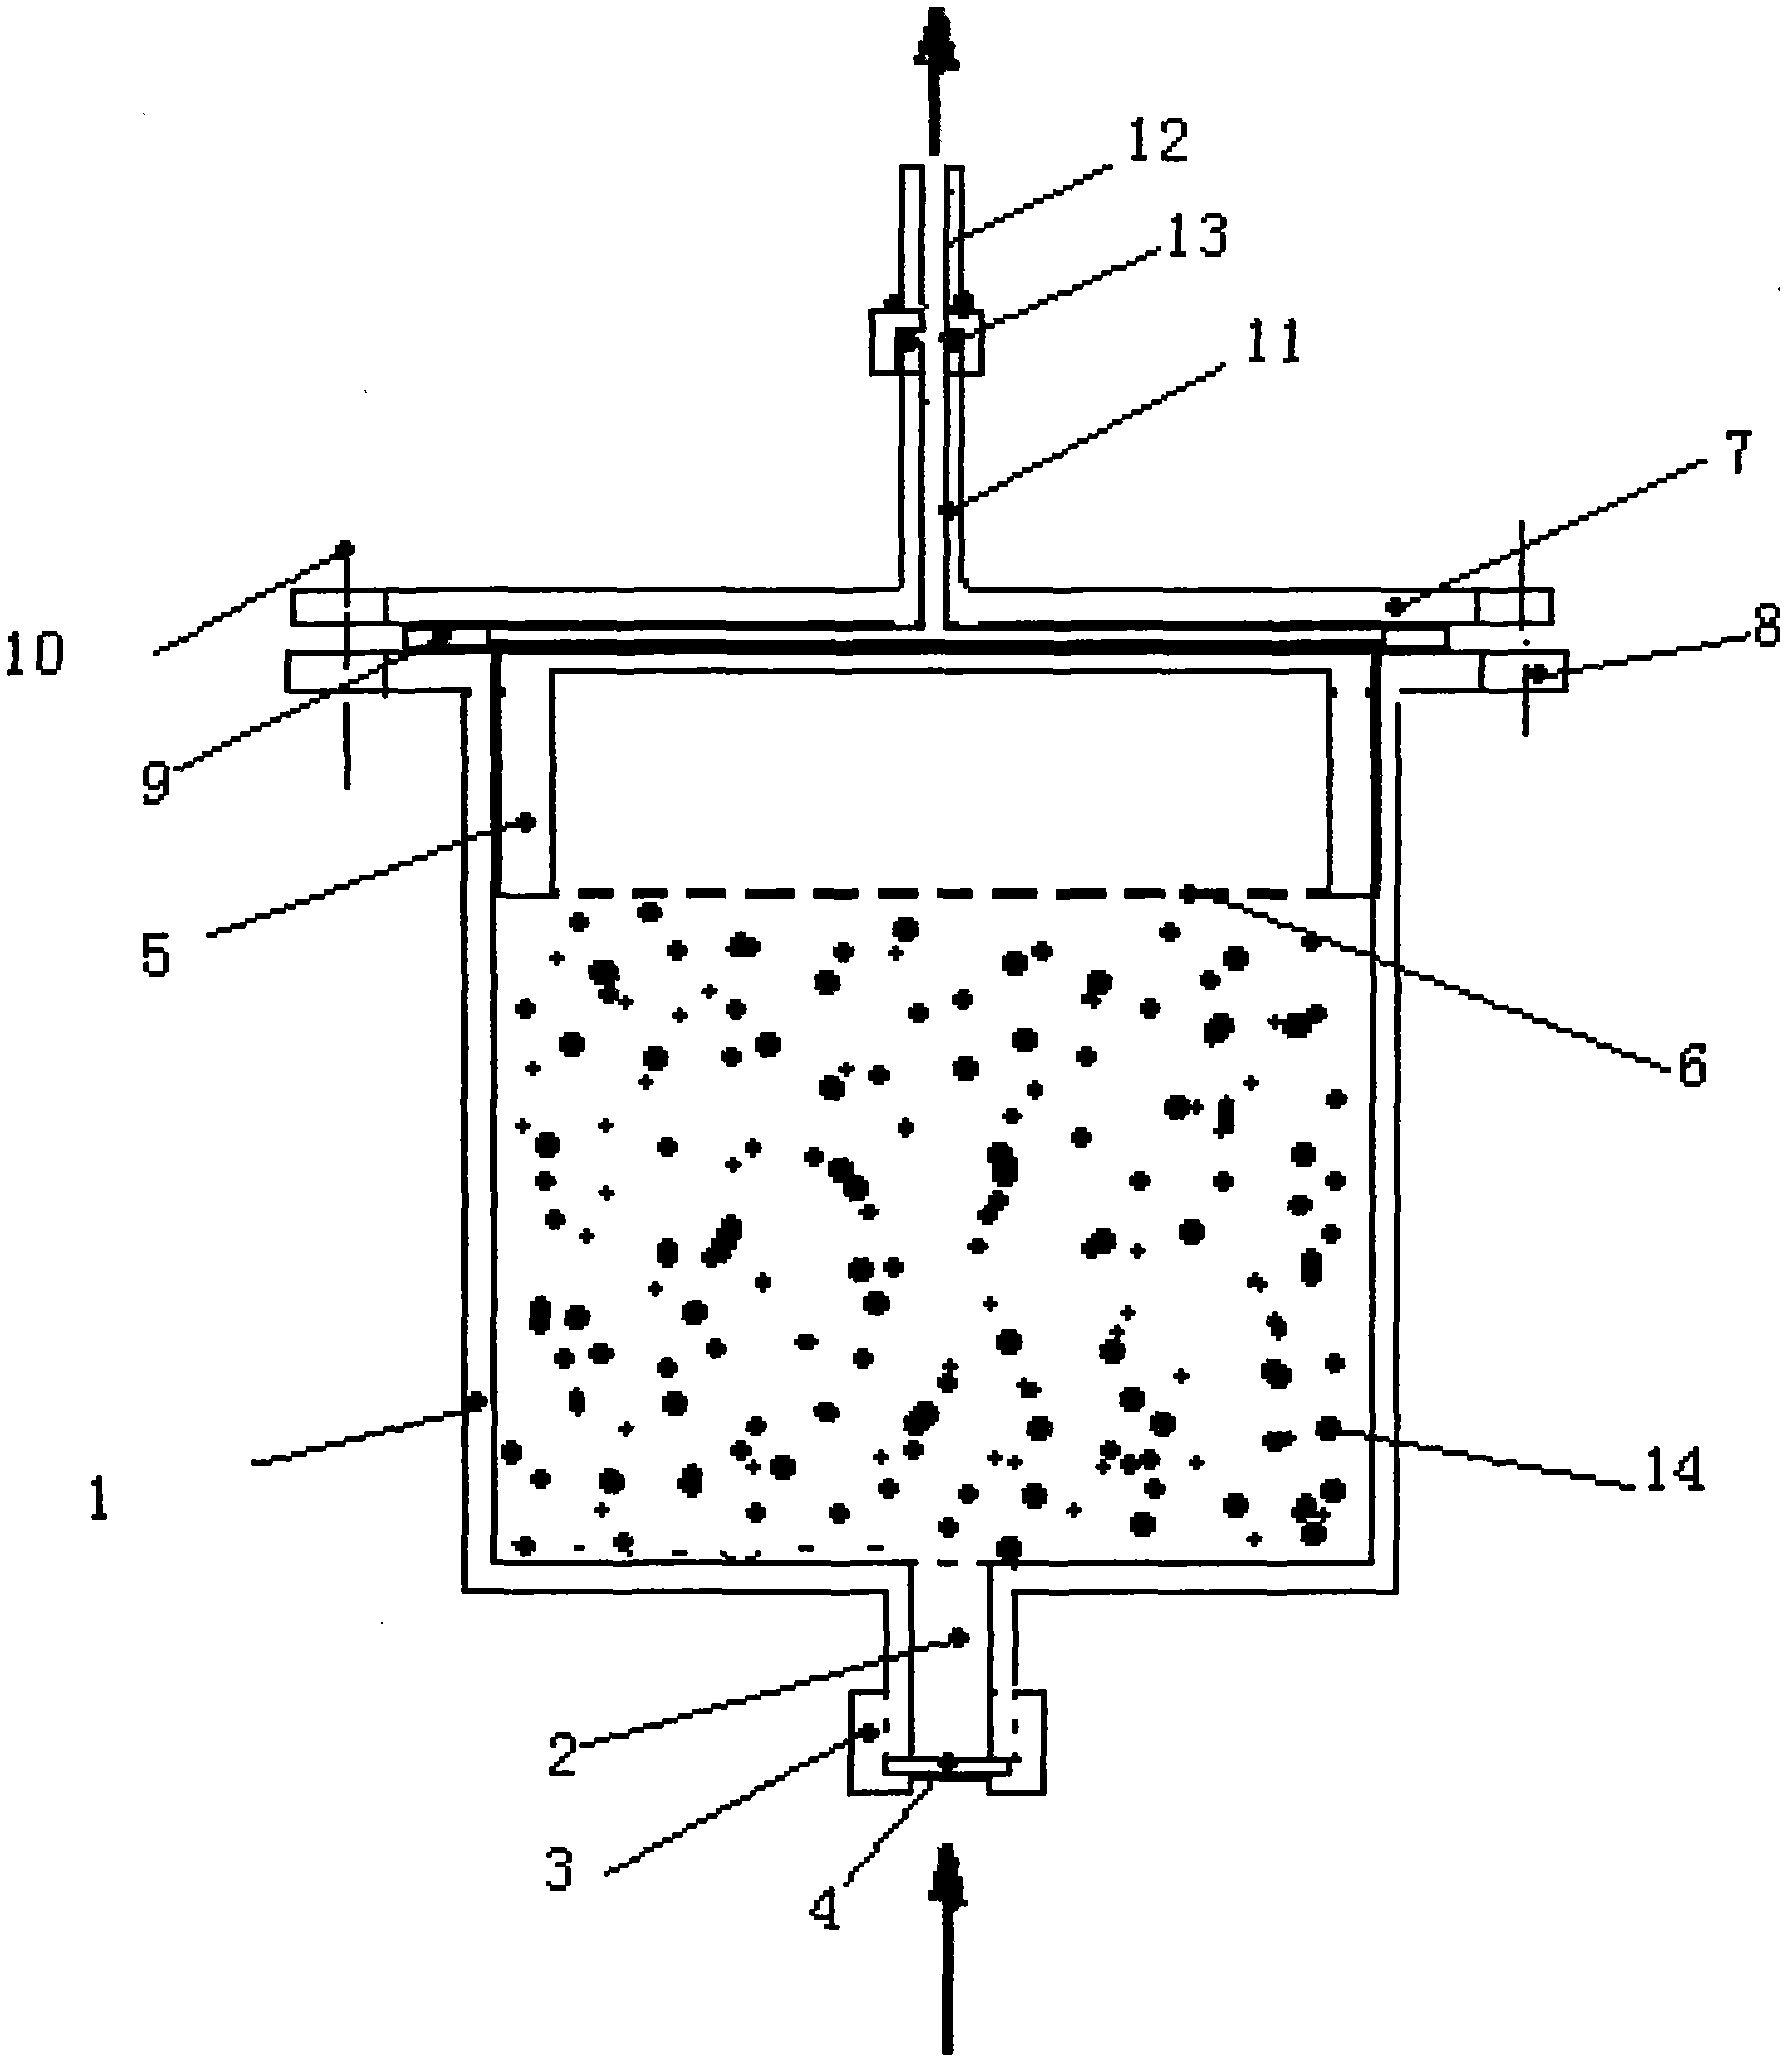 Production method for particle reinforced aluminum matrix composite ingots